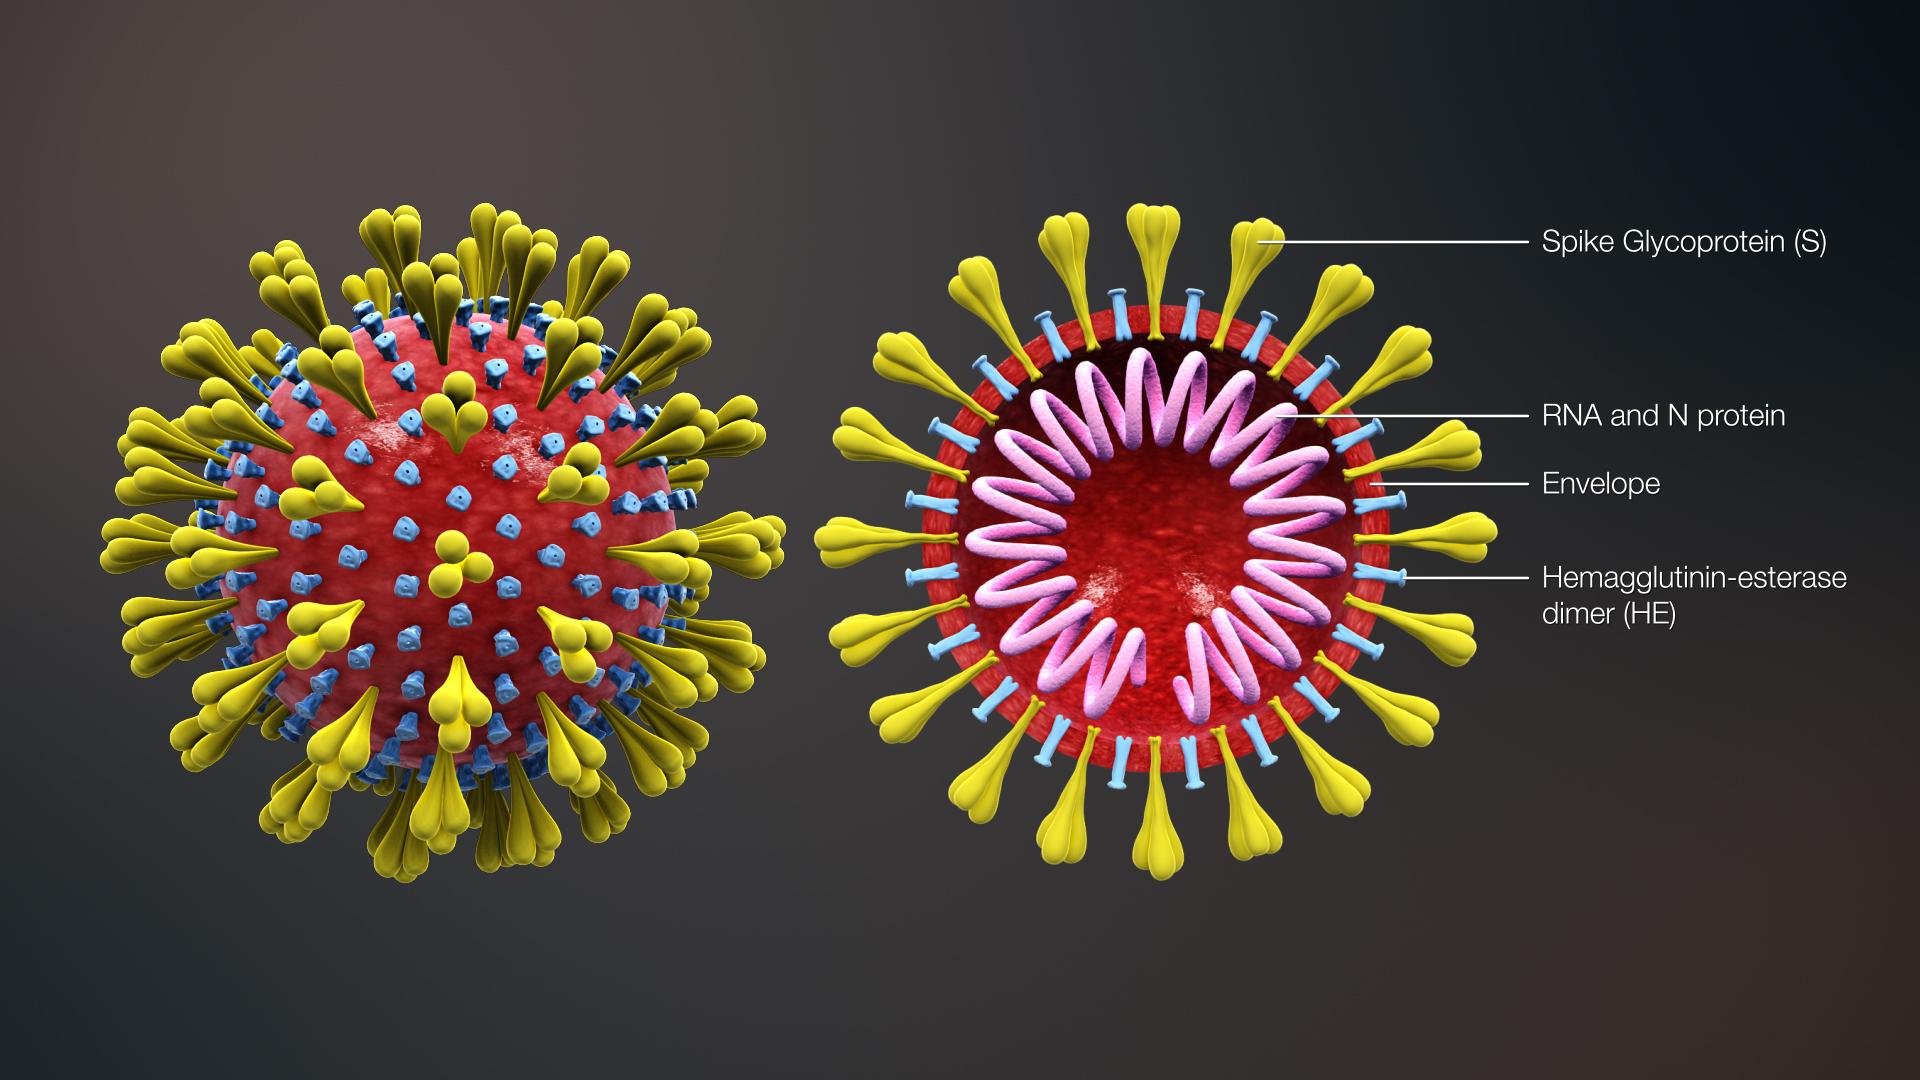 Koronavírusy sú jednoduché veci - RNA, čo je molekula nesúca genetickú informáciu, obaľuje plášť, z ktorého vyčnievajú proteínové výbežky. Pre tie pod mikroskopom pripomínajú vírusy malé kráľovské koruny. Corona je latinsky koruna. Odtiaľ názov coronavirus, resp. koronavírus.